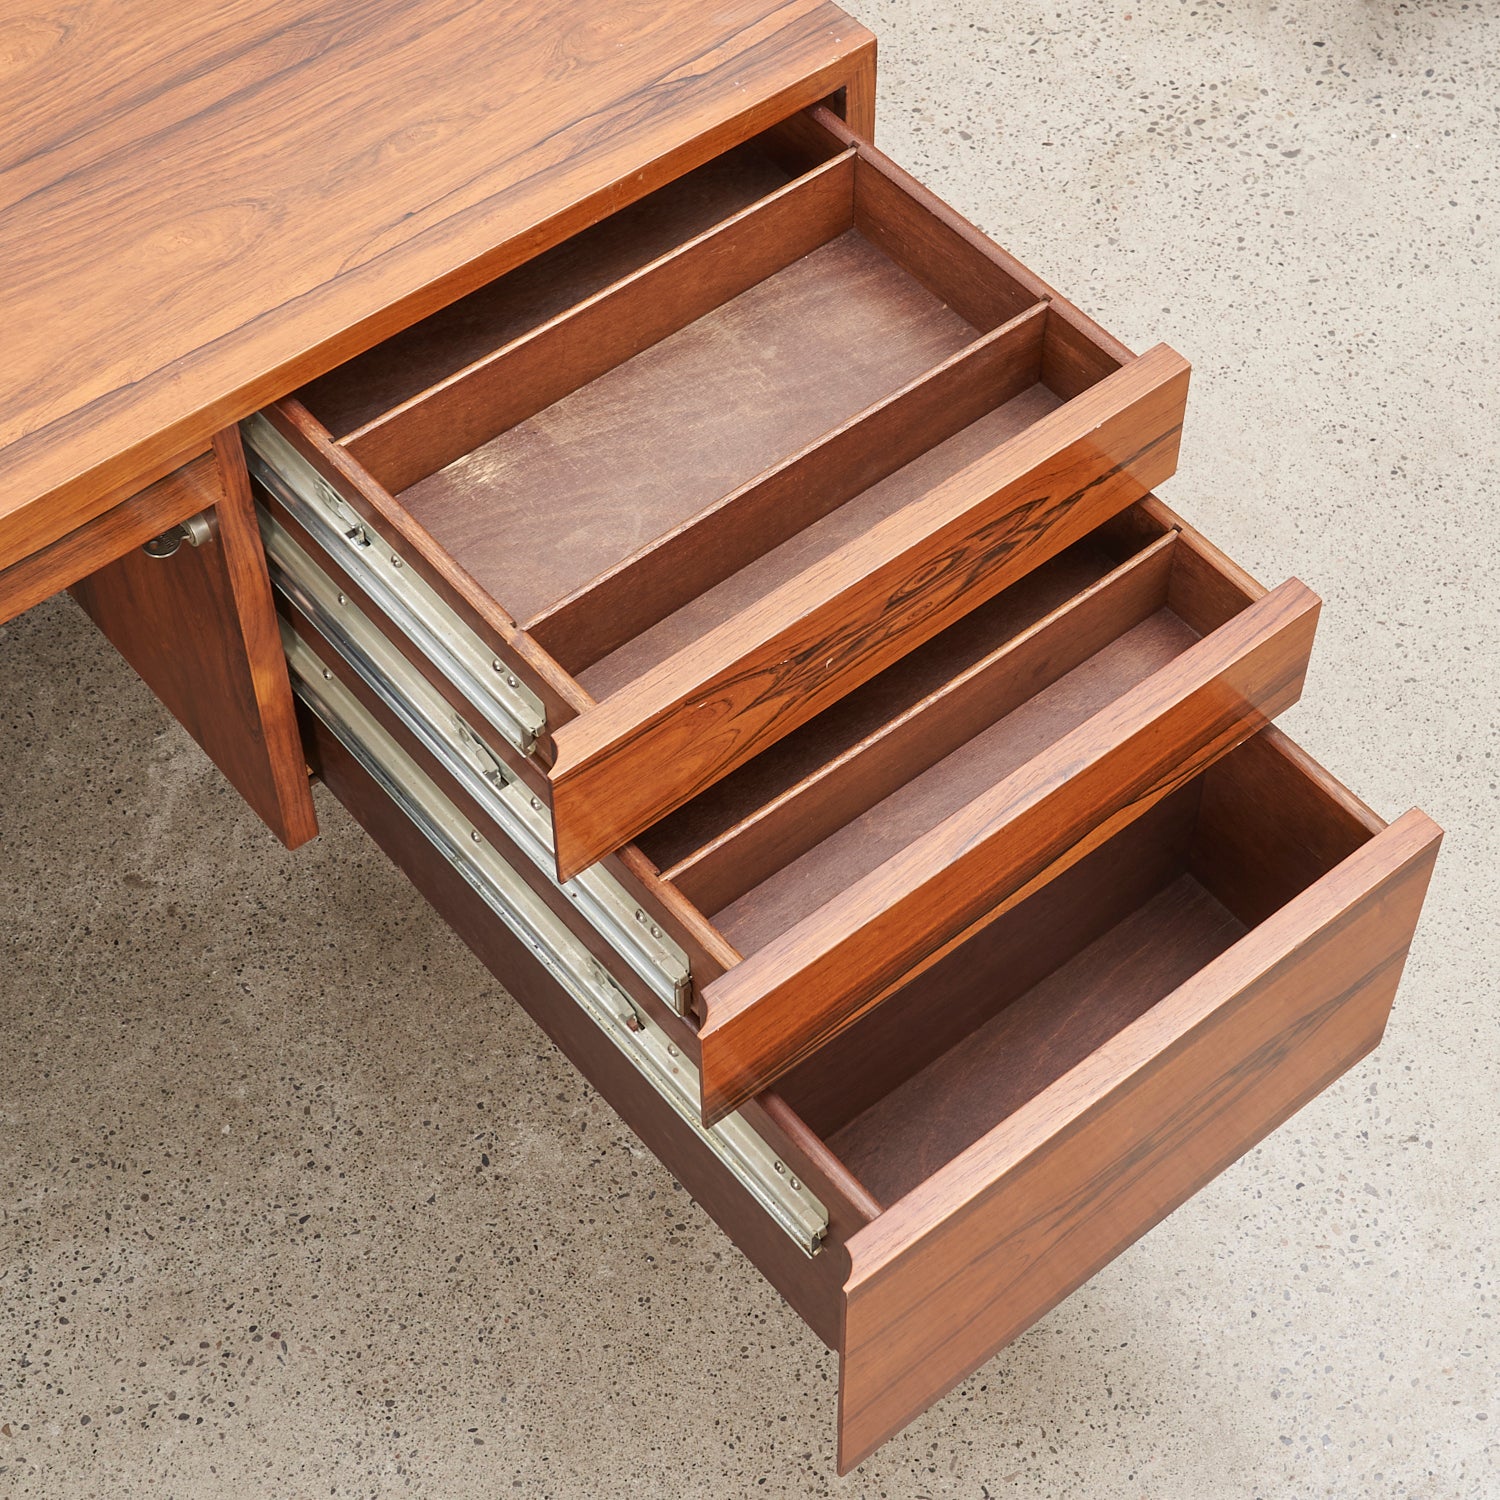 Modernist Rosewood & Chrome Desk by Scandiline